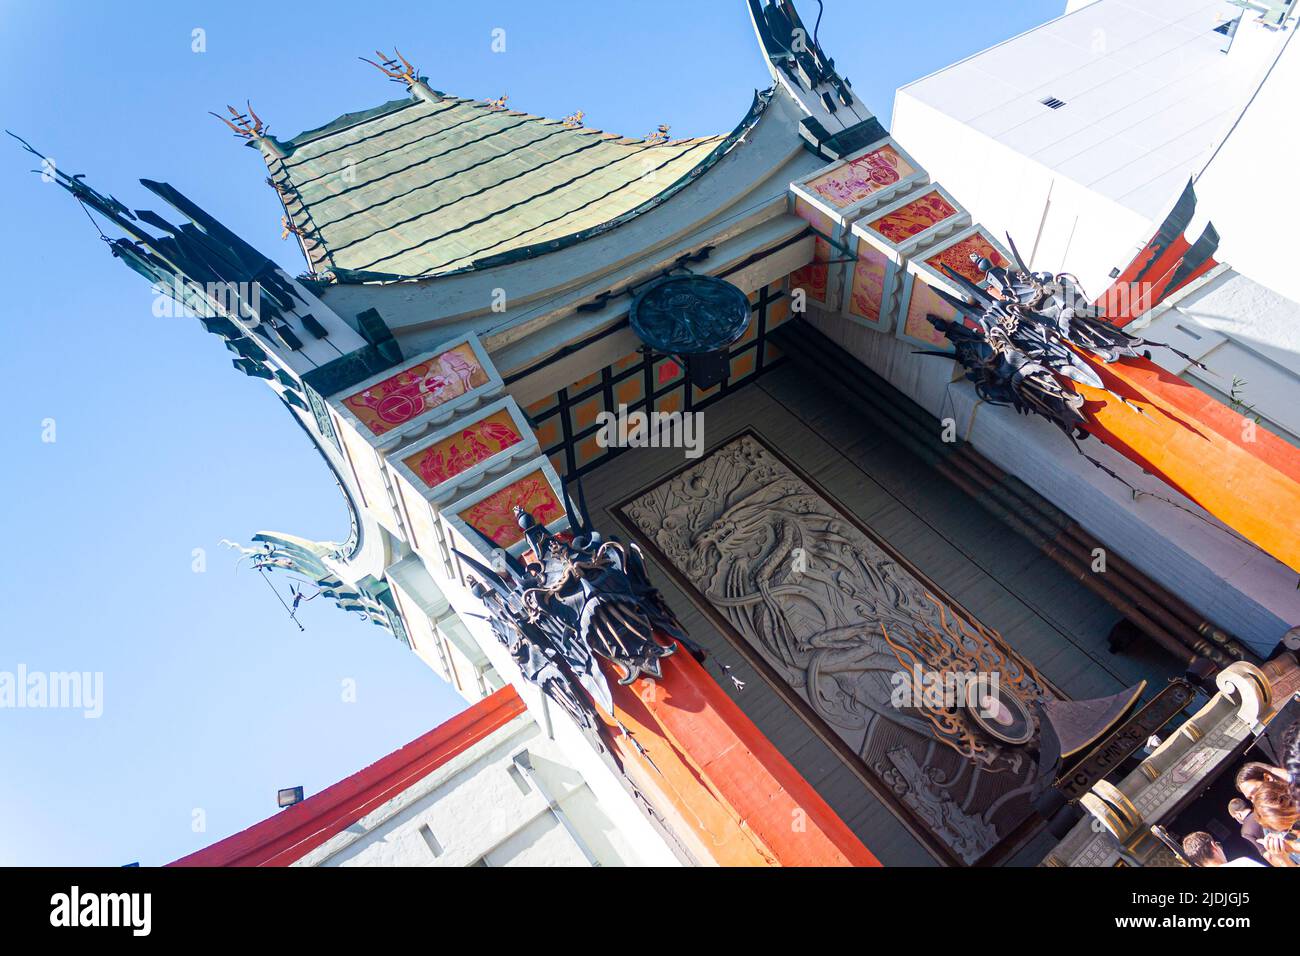 Le théâtre chinois de Grauman sur le Hollywood Walk of Fame Banque D'Images